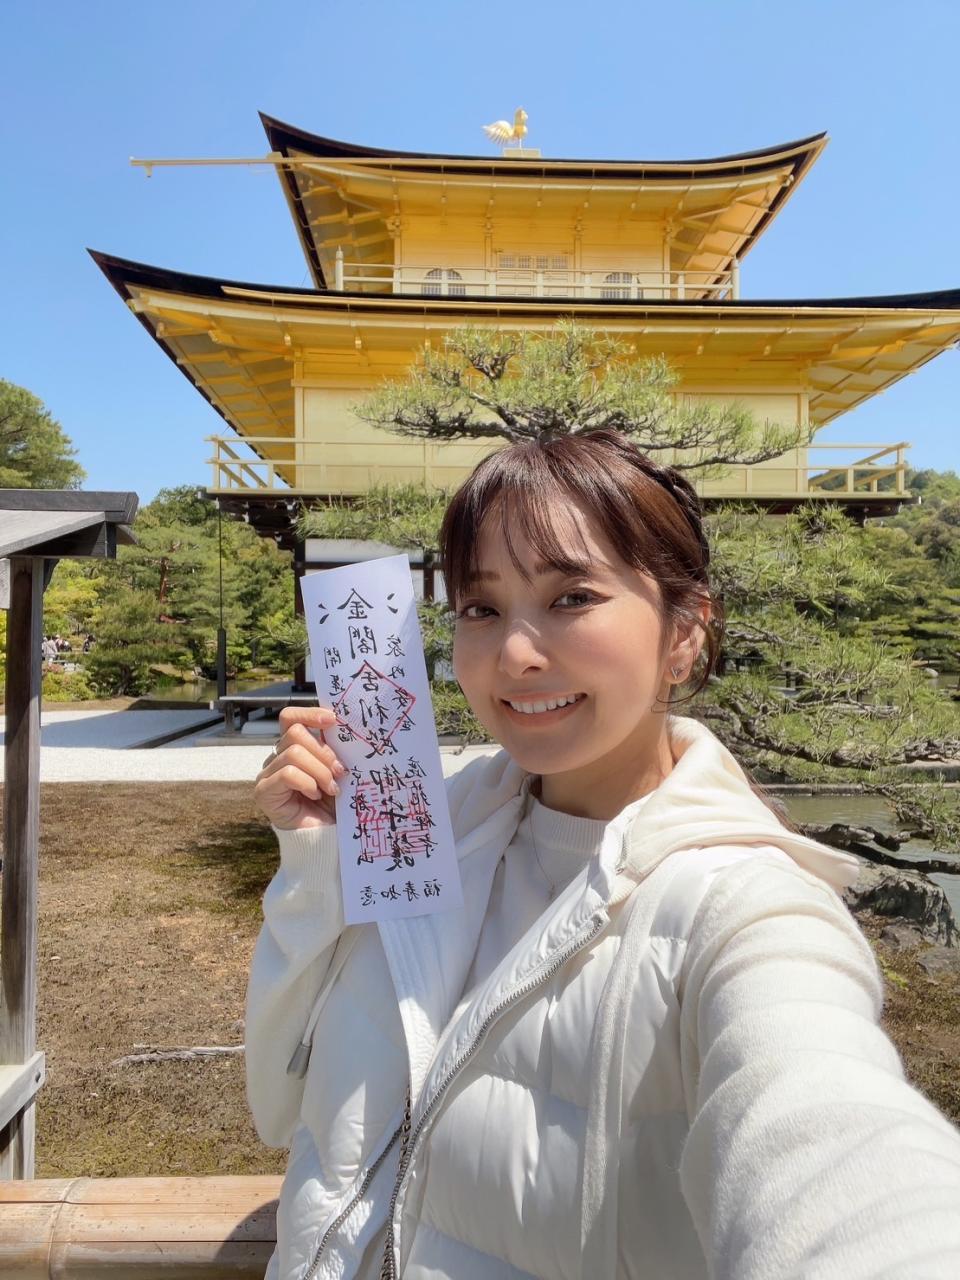 愛紗去日本京都金閣寺求得的平安符，保佑出入平安。(照片/愛紗提供)